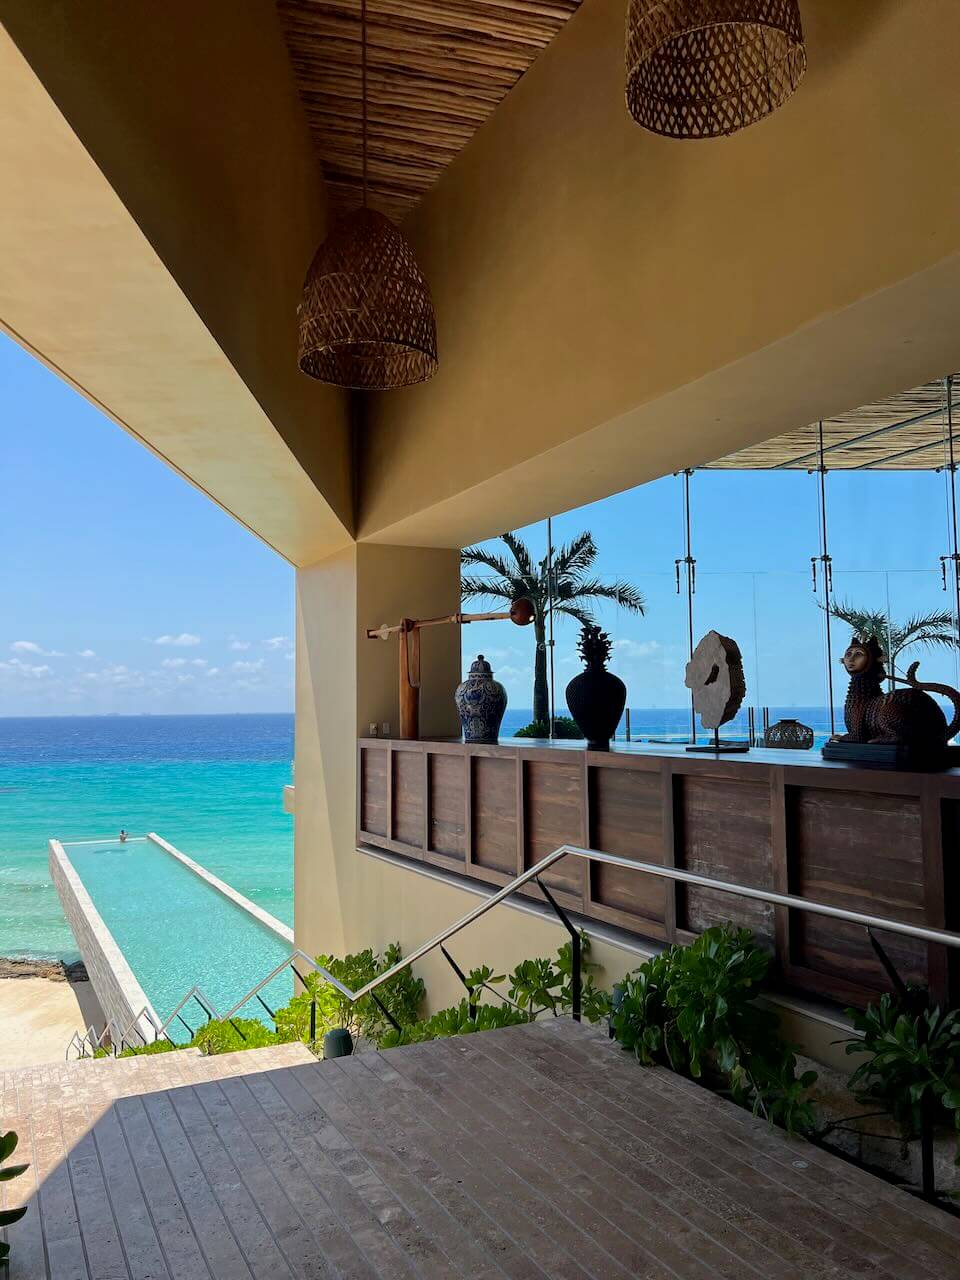 Open air hotel lobby La Casa de la Playa luxury hotel in Mexico.